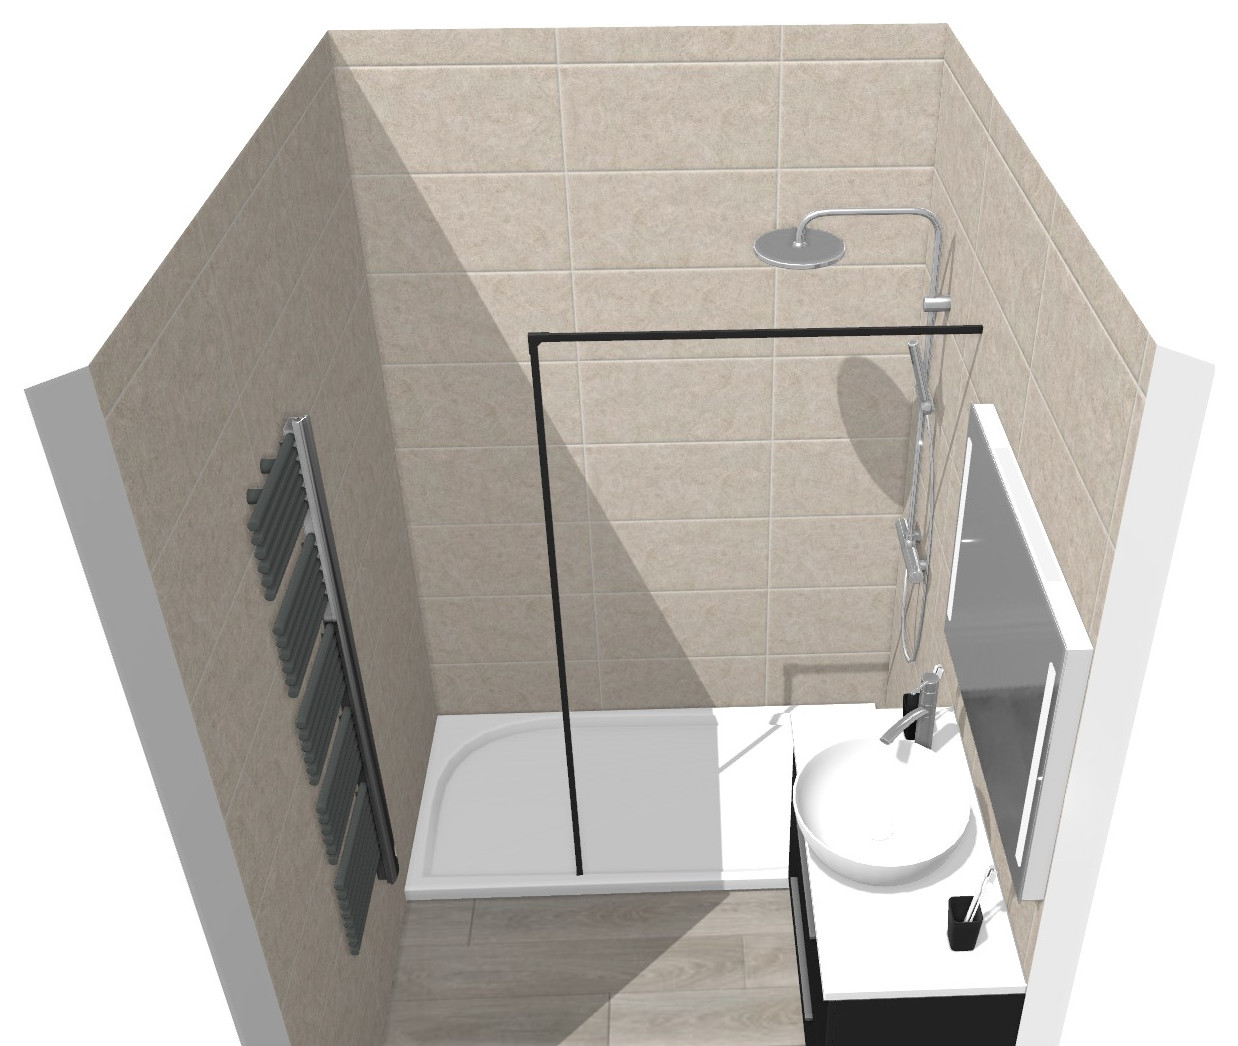 Salle de bain - Projection 3D vue coté